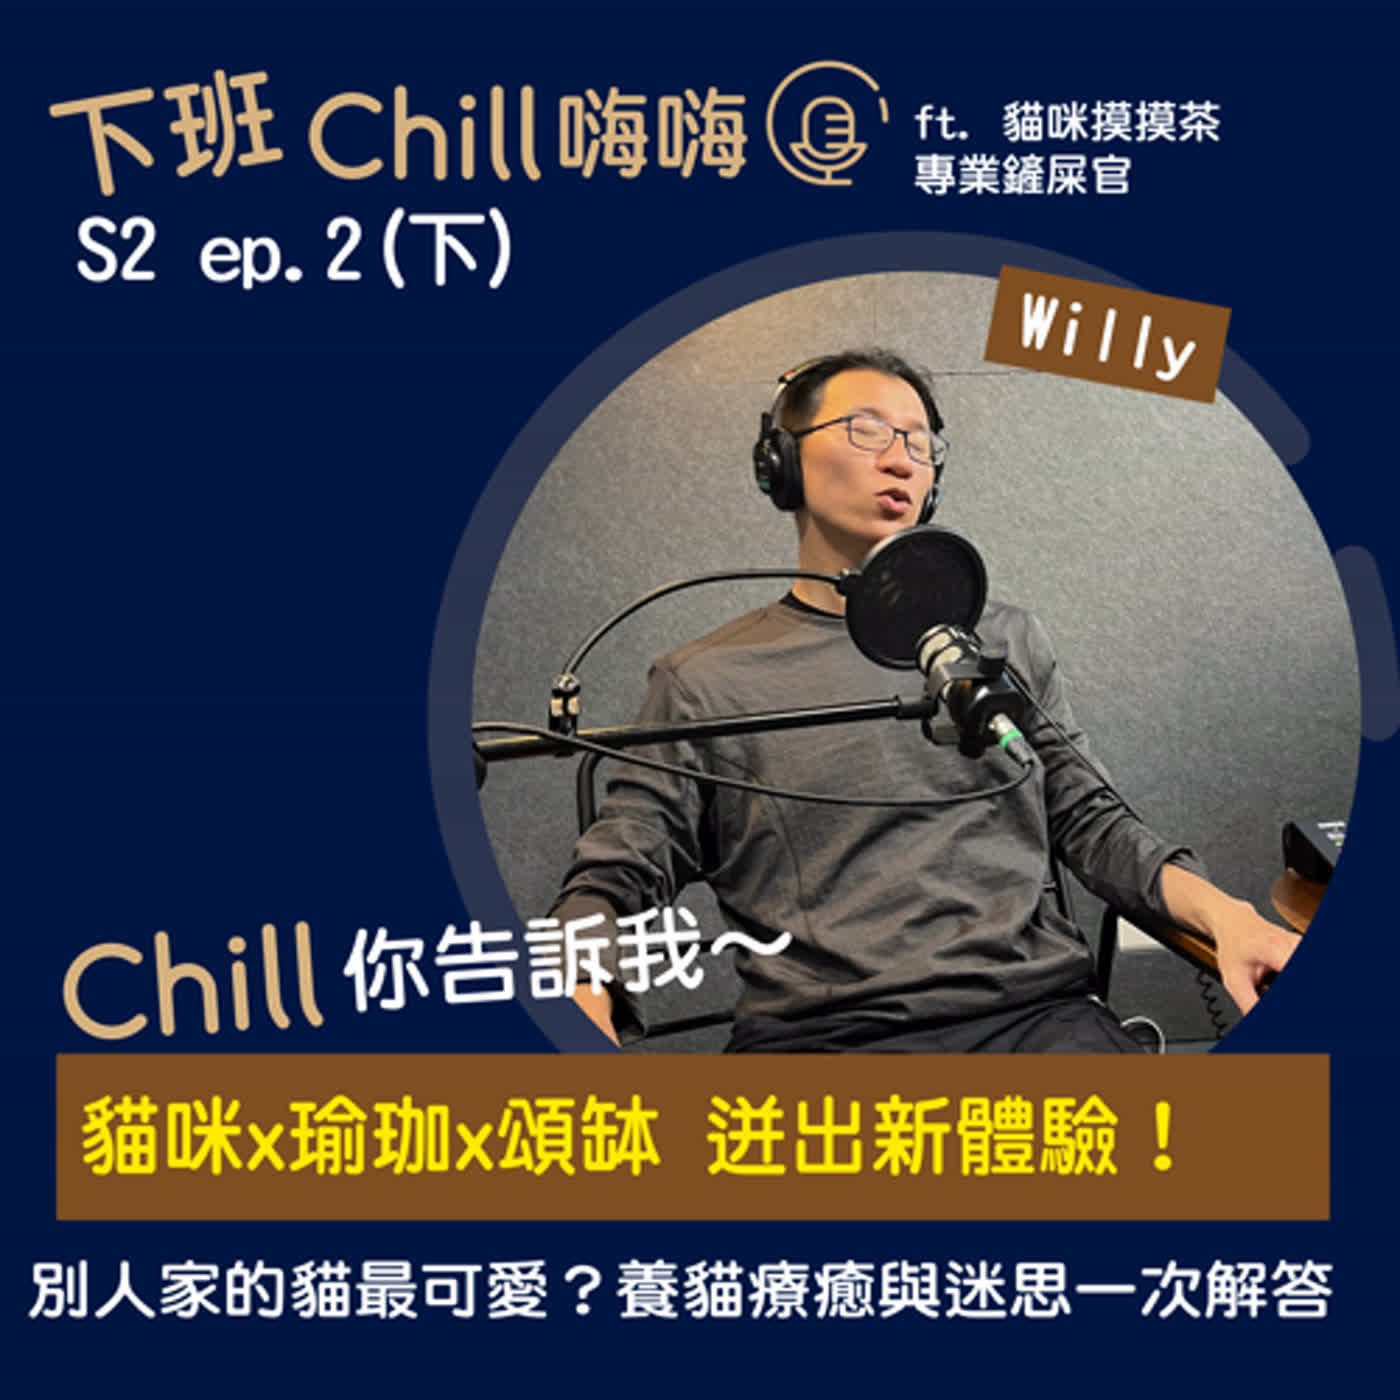 下班Chill 嗨嗨 S2 ep.2(下) | Chill來【貓咪摸摸茶】吸貓吧~ ft. Willy